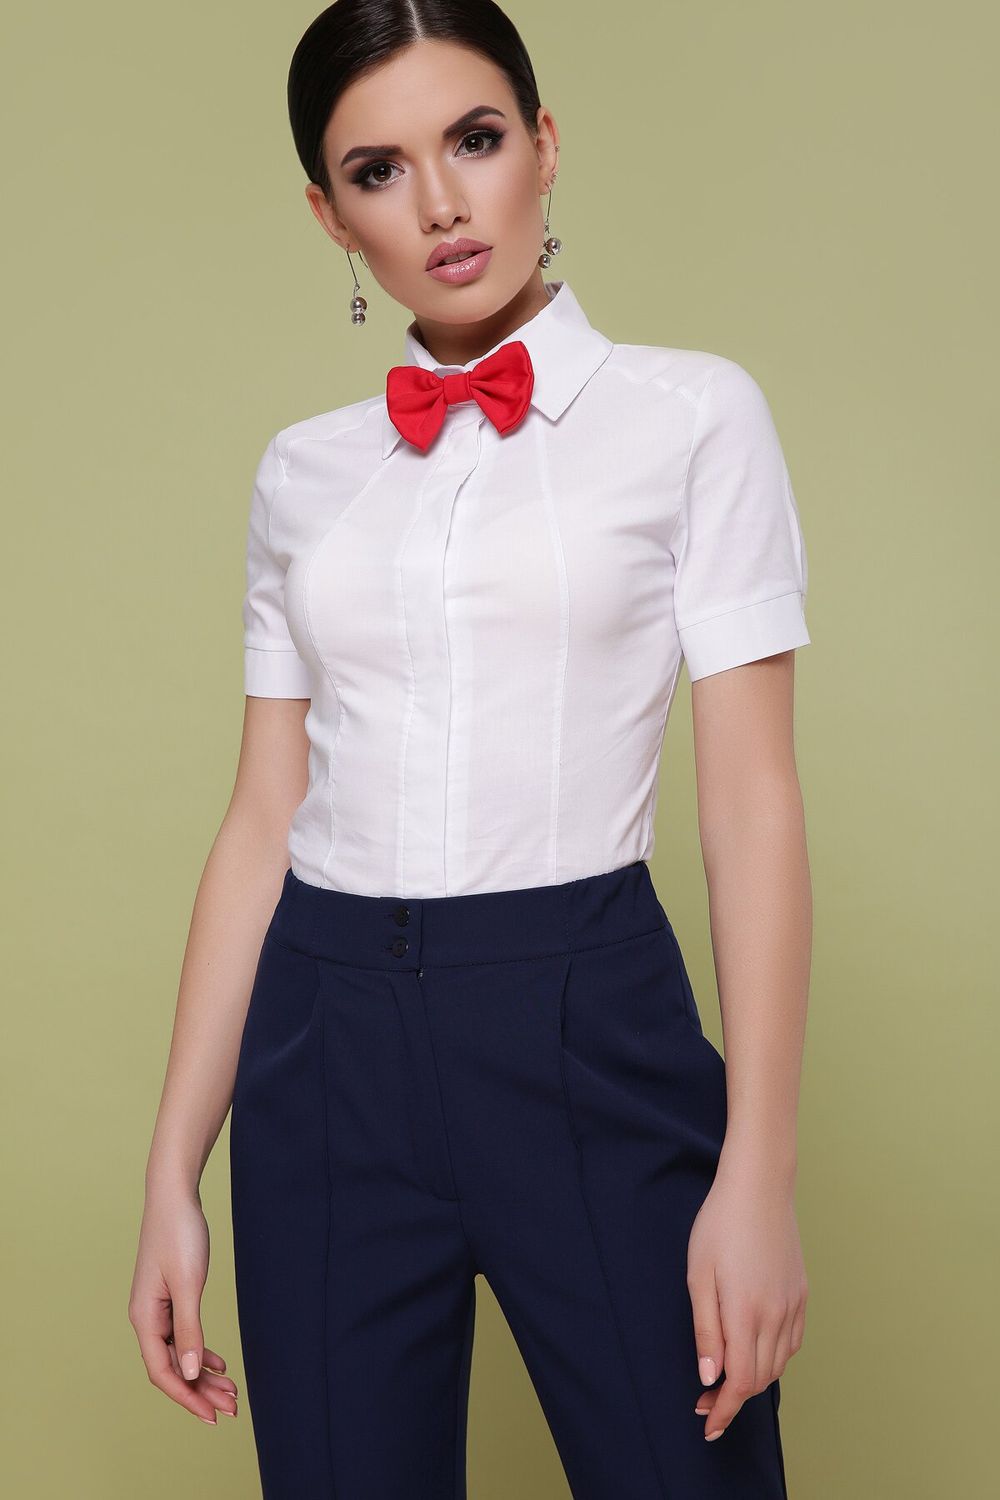 Класична жіноча сорочка з коротким рукавом - фото